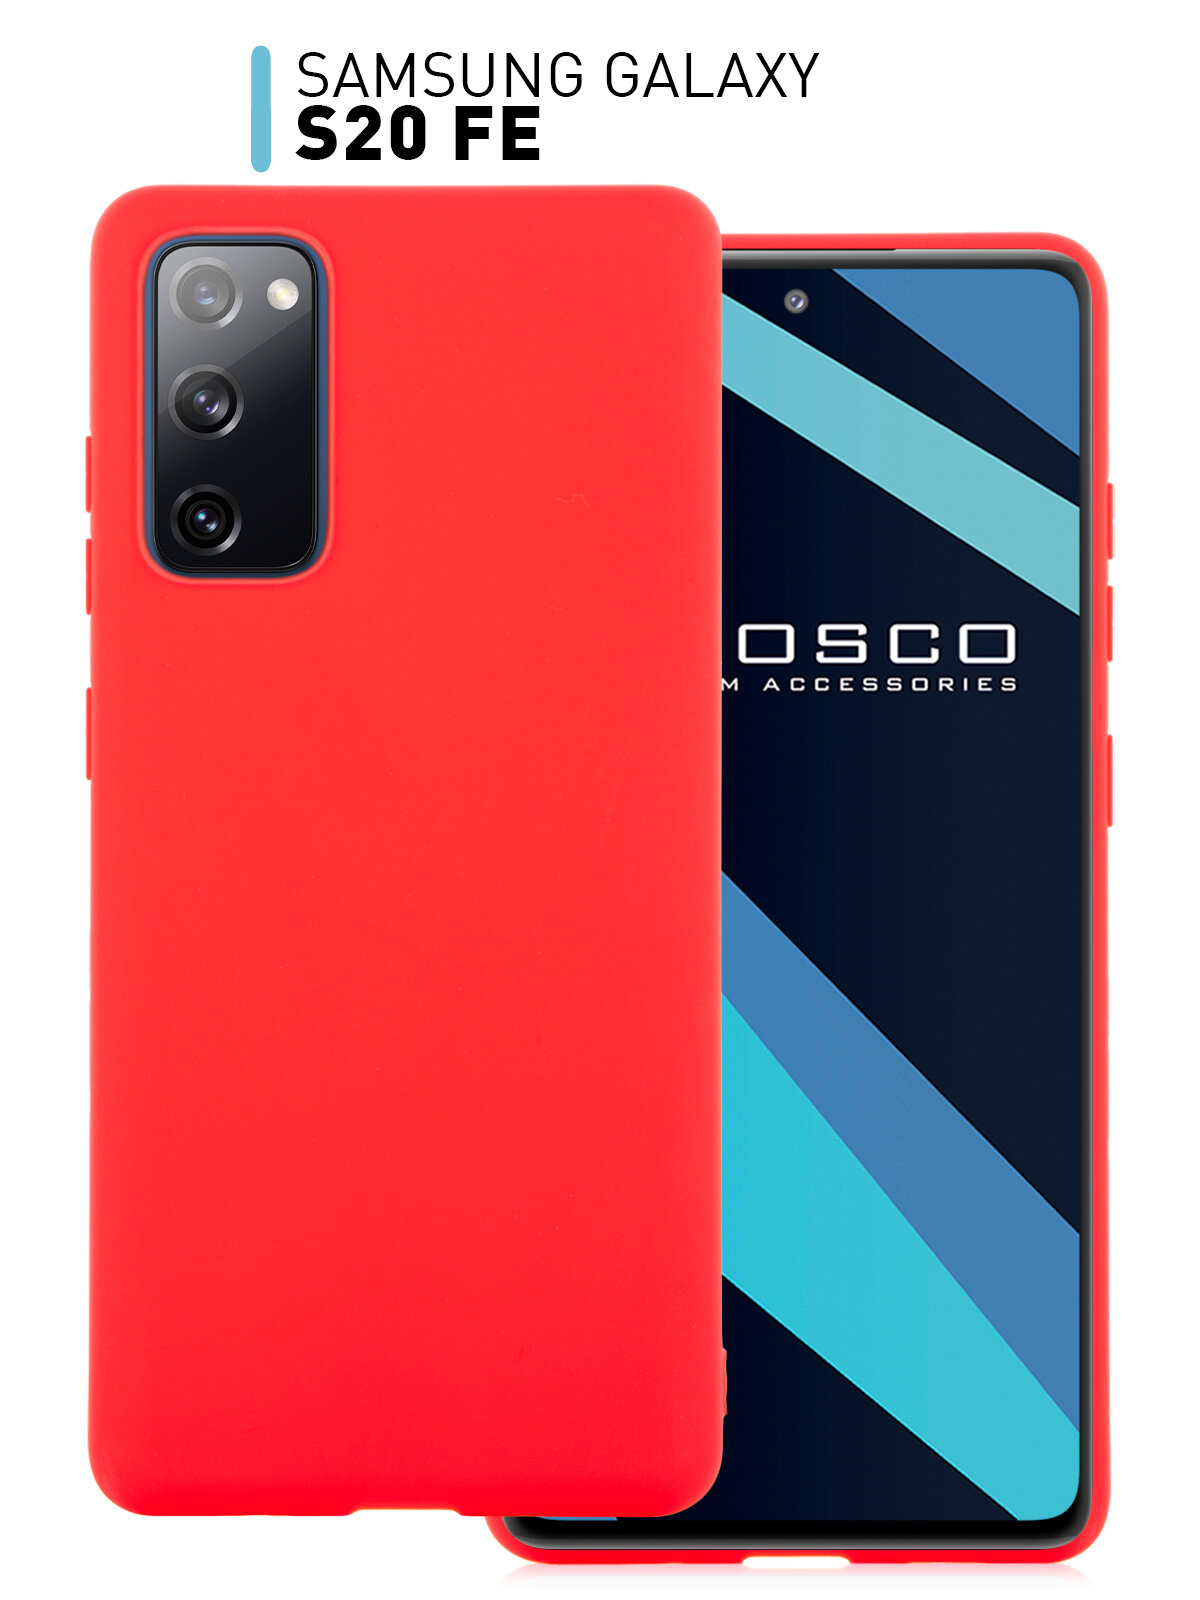 Матовый силиконовый чехол ROSCO для Samsung Galaxy S20 FE (Самсунг Галакси С20 ФЕ, S20FE), красный